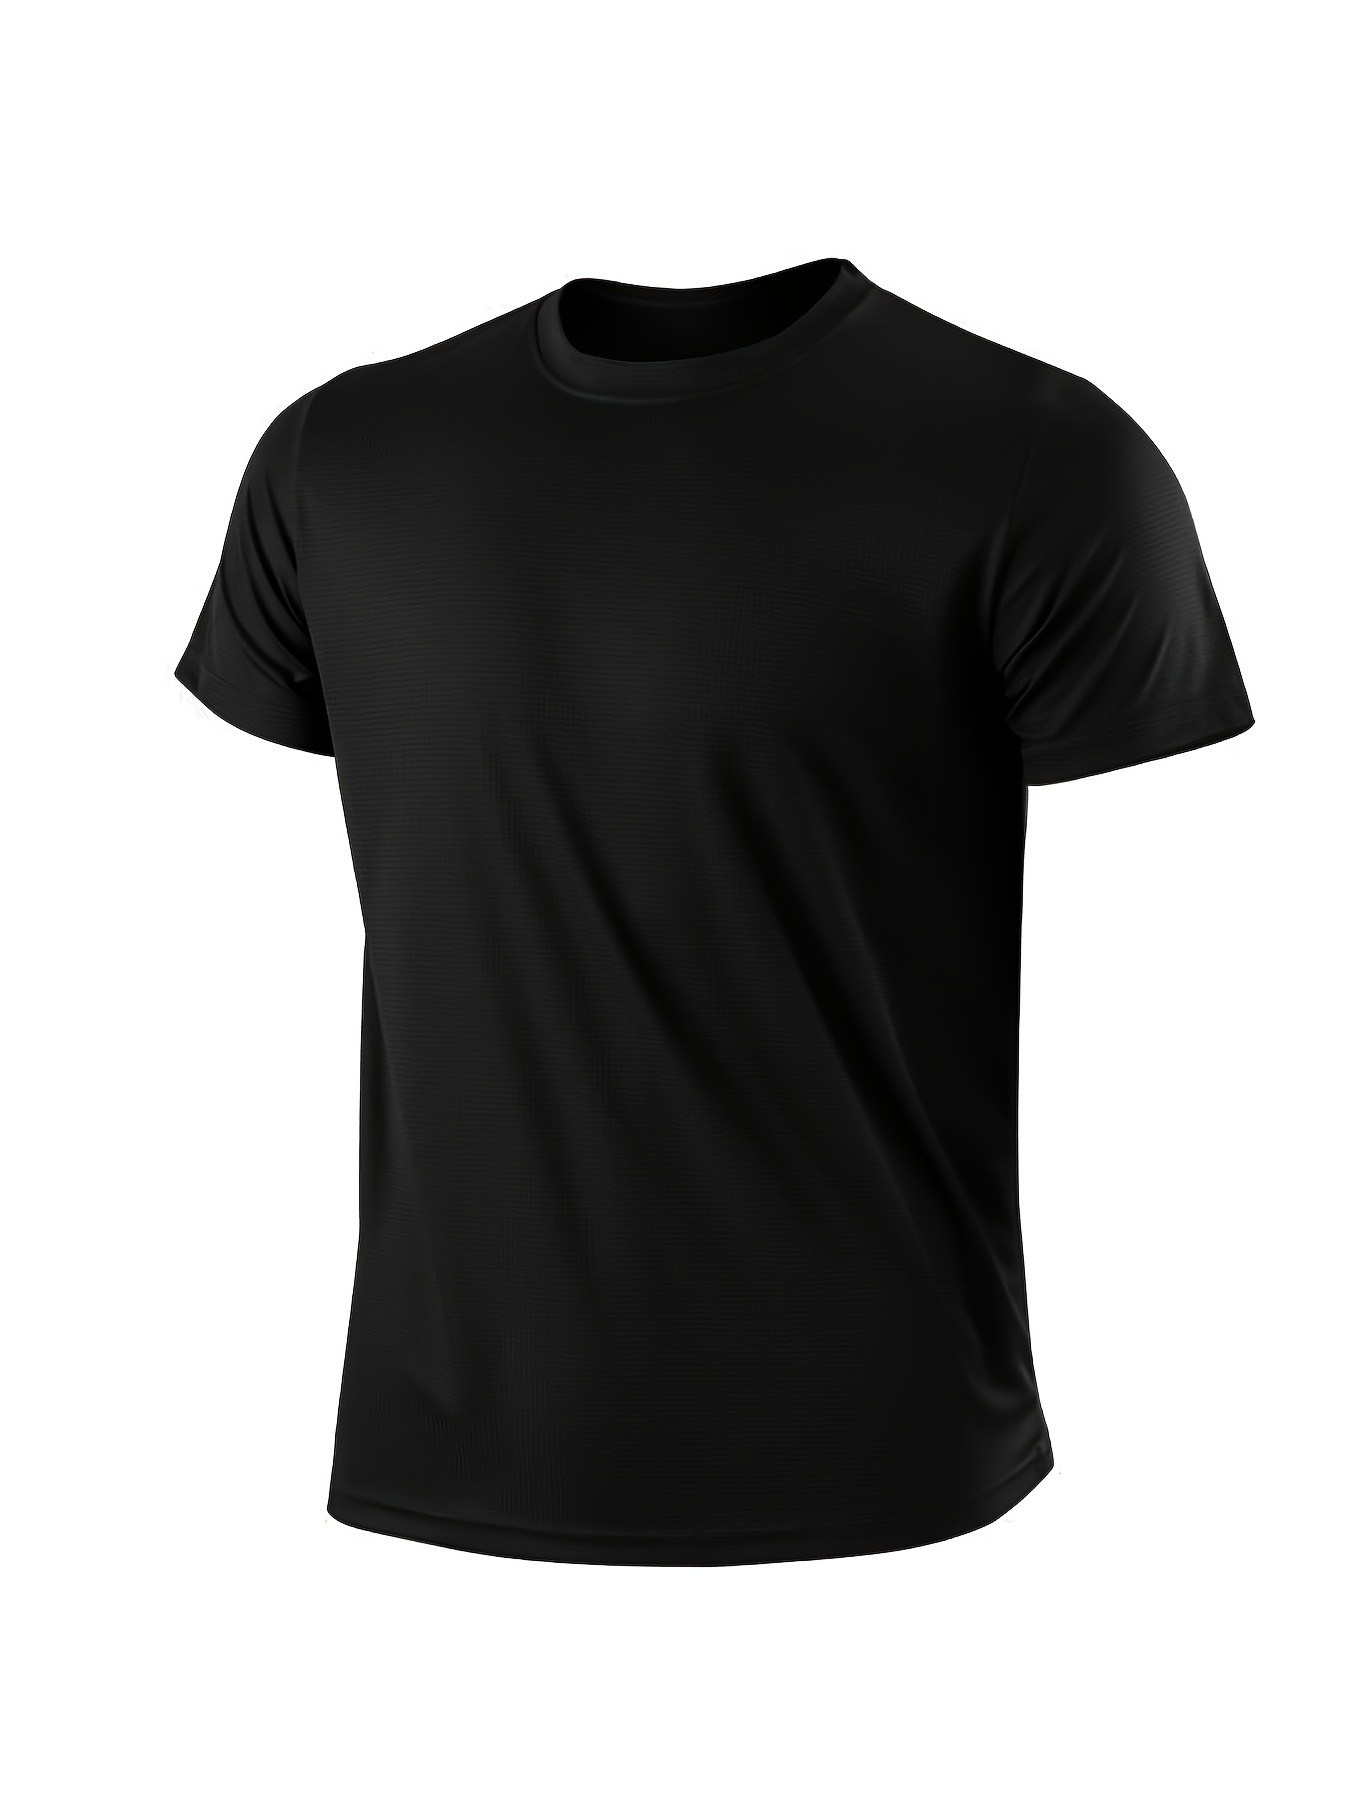 Black Shirt For Men - Temu Canada